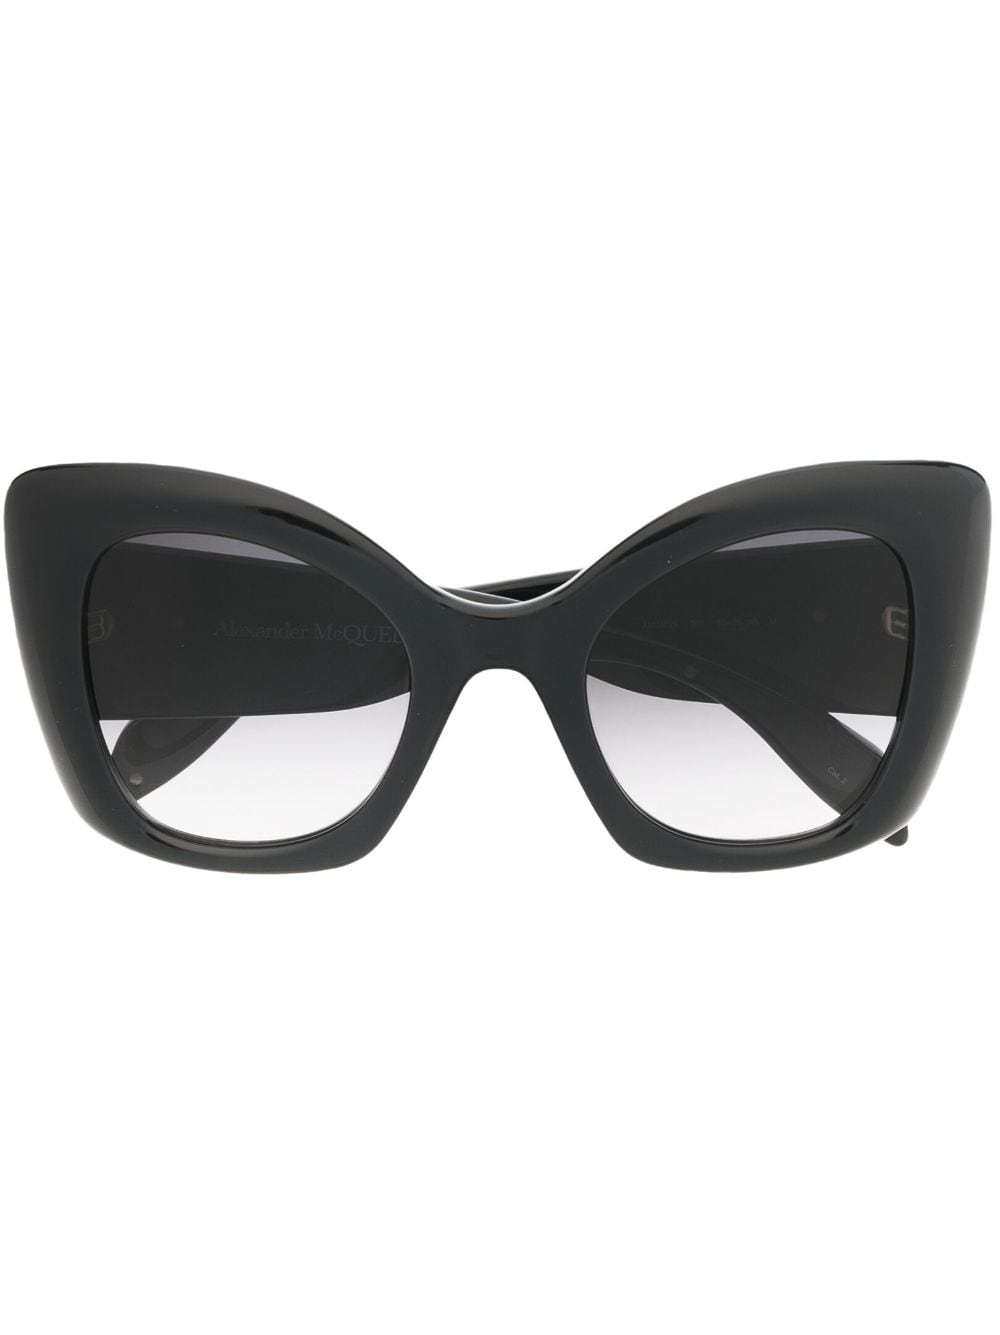 Alexander McQueen Eyewear gradient cat-eye frame sunglasses - Black von Alexander McQueen Eyewear